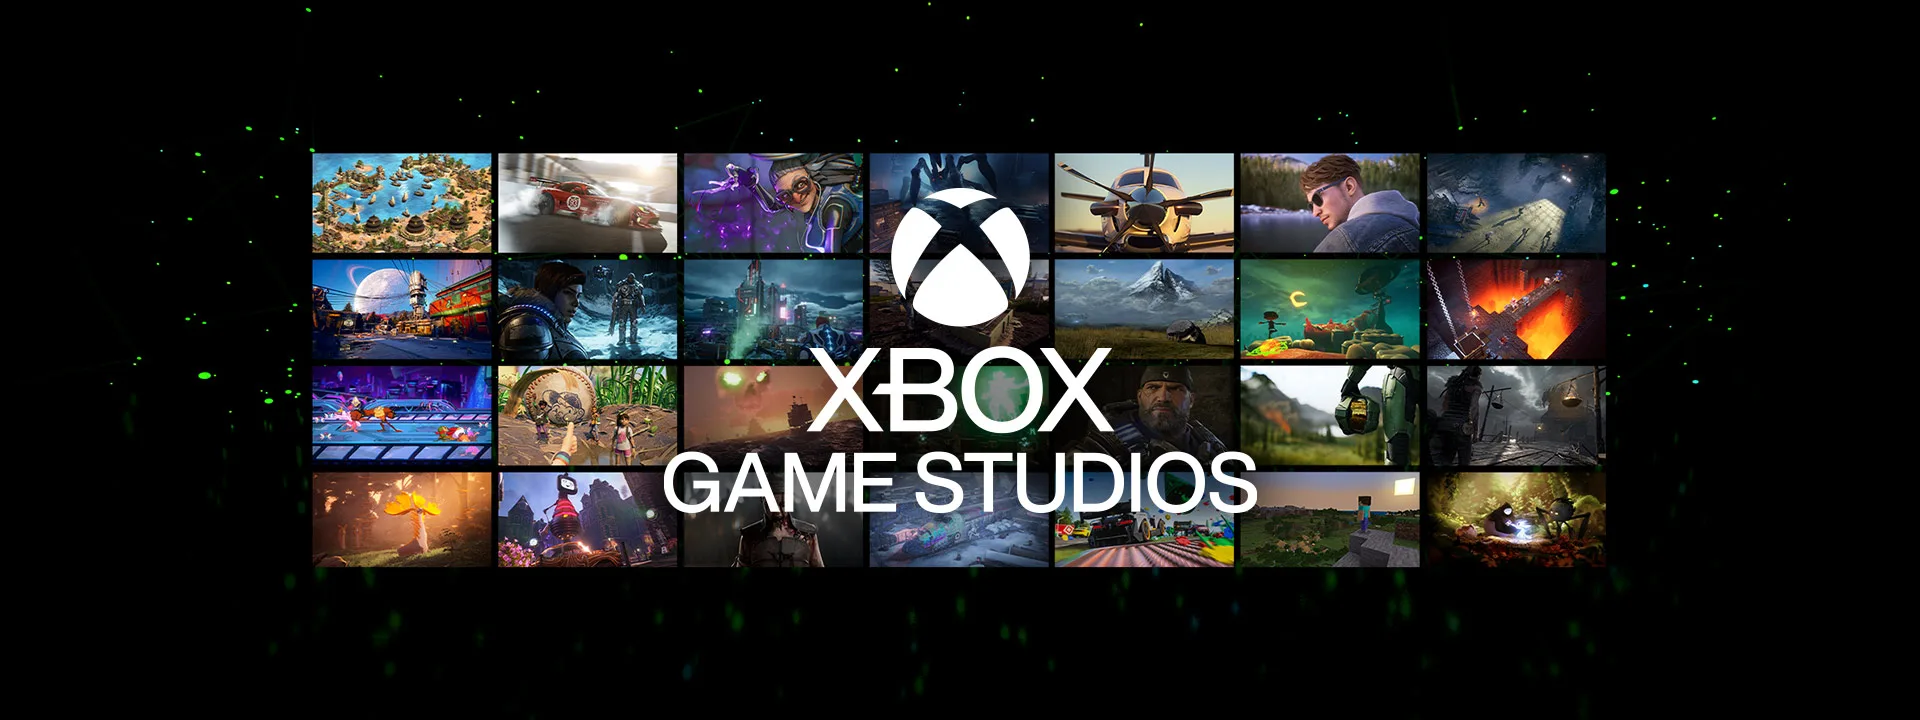 شركة Xbox ناوية تستحوذ على استوديوهات اكتر في المستقبل